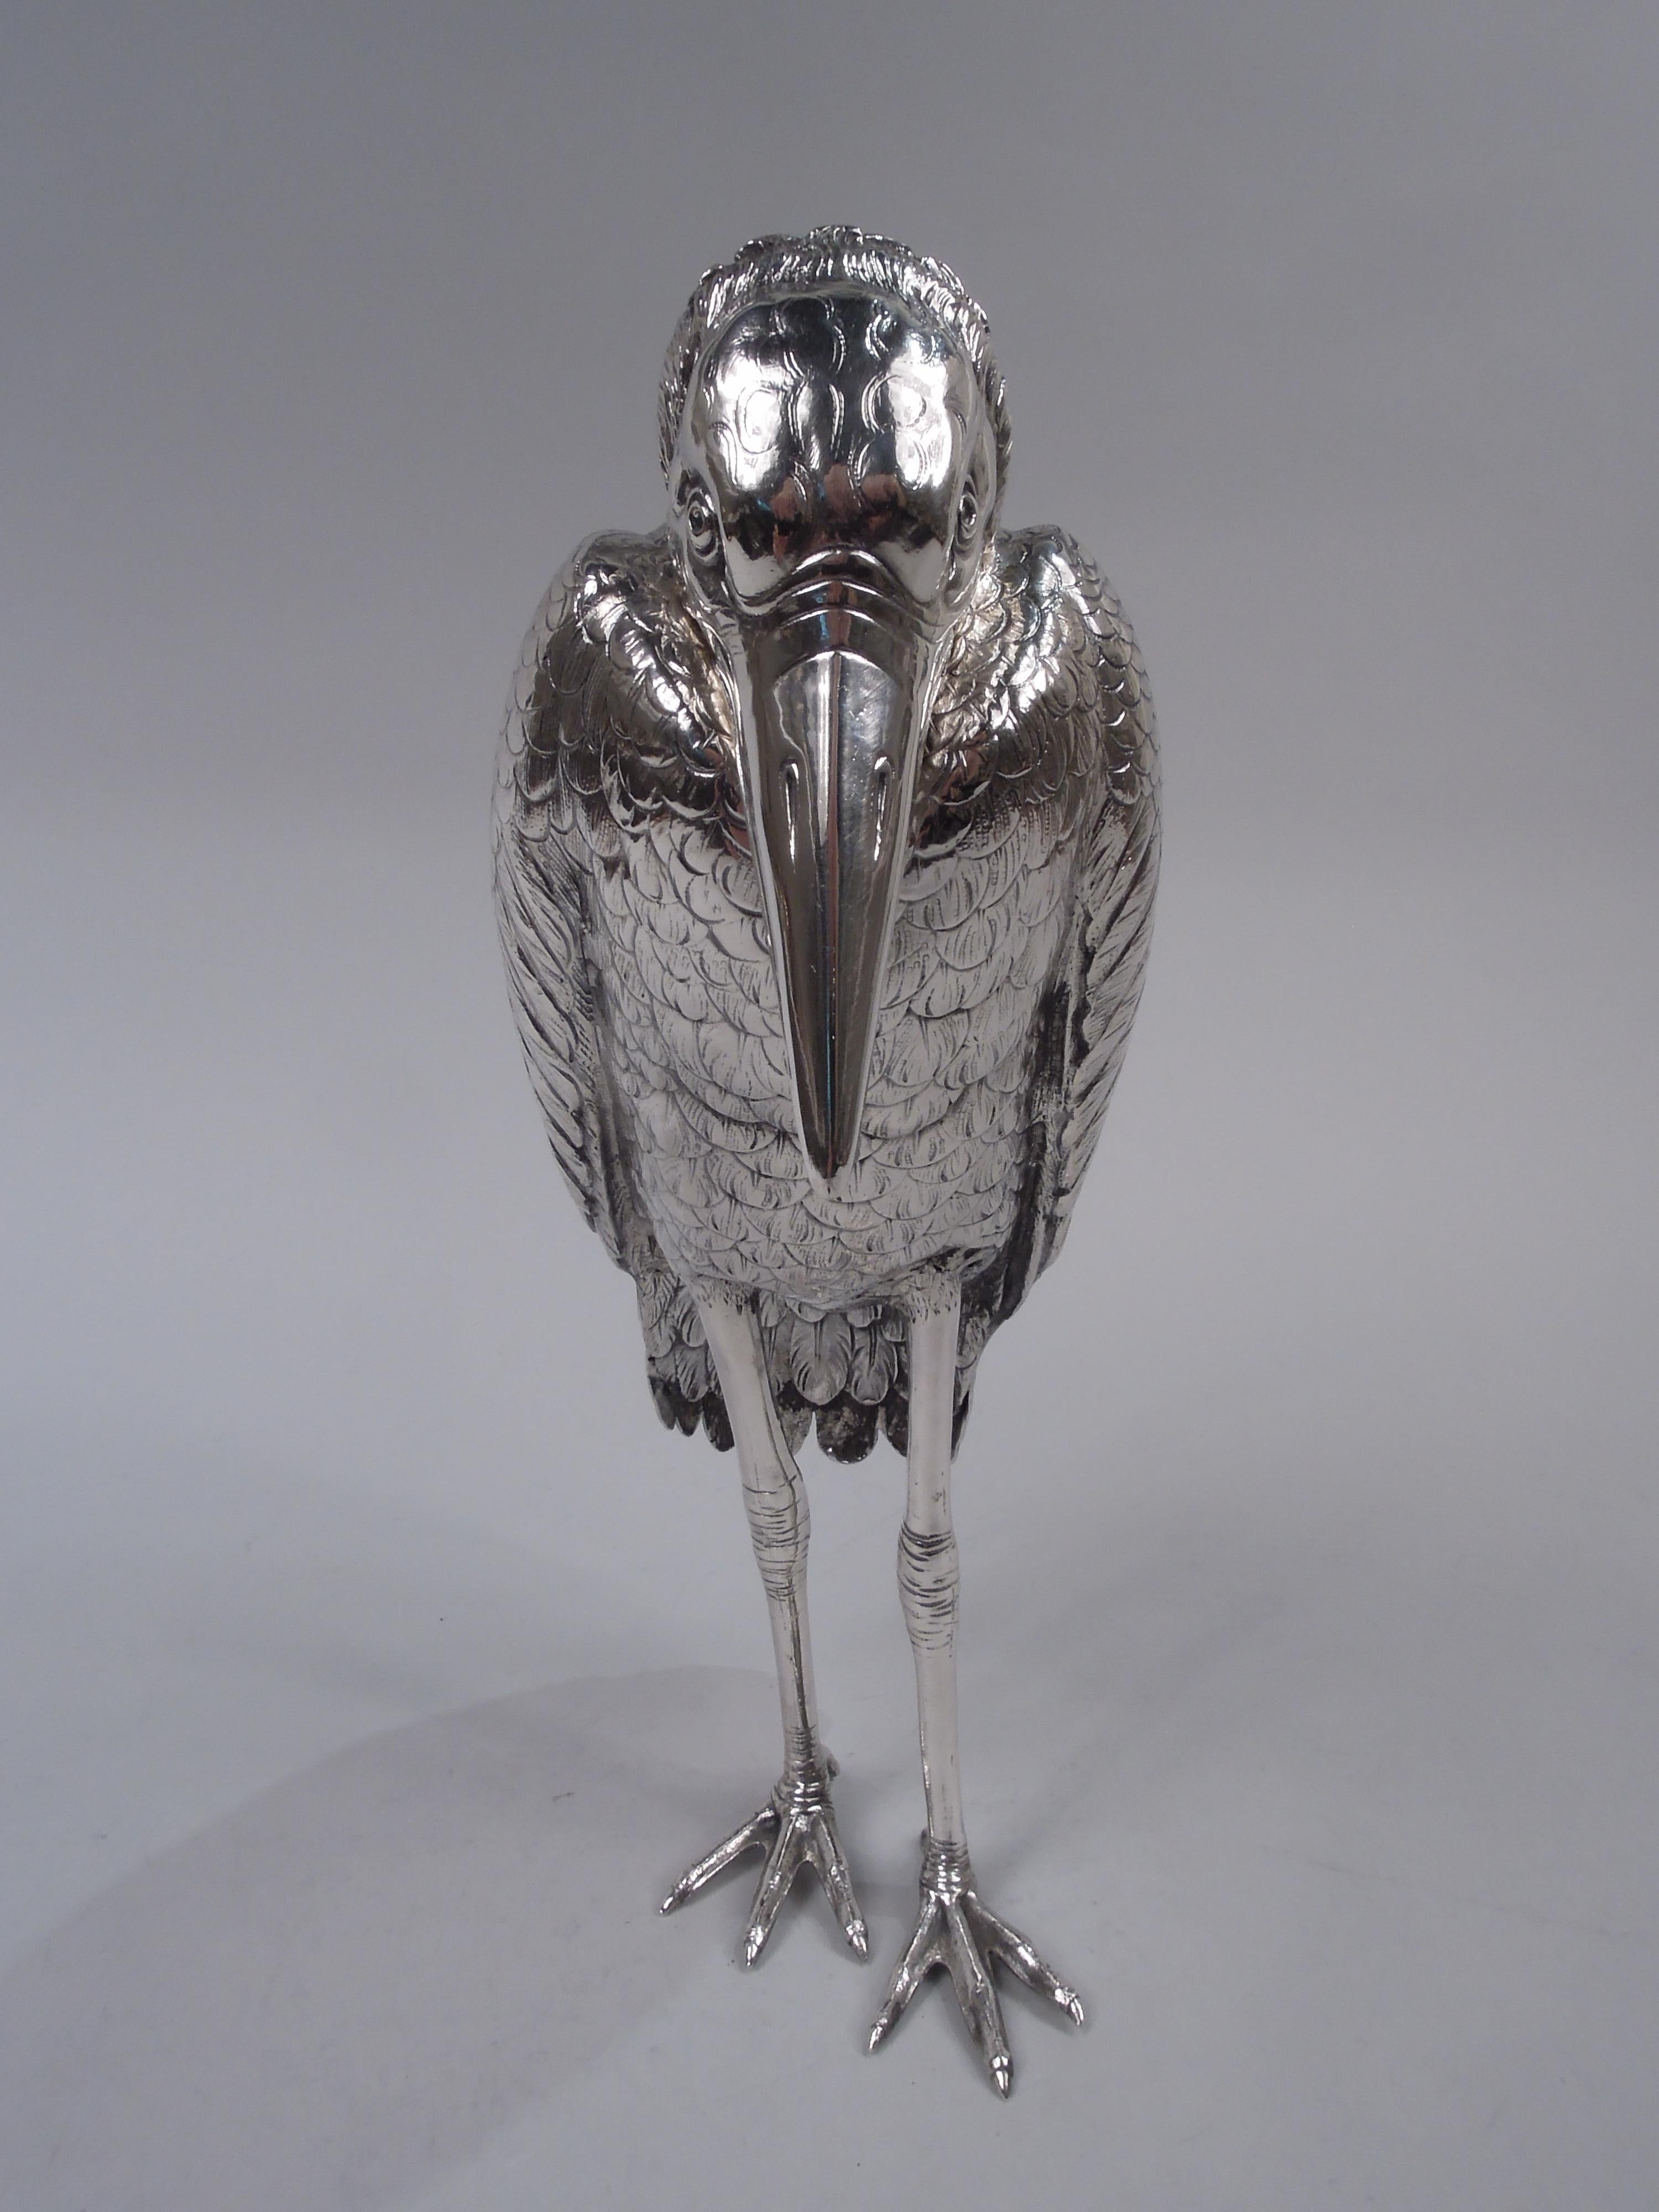 Boîte à épices en argent 800 allemand avec oiseau figuratif, vers 1900. Corbeau aux épaules voûtées, aux ailes repliées et aux pattes grêles ; tête détachable renversée avec des yeux pensifs et un long bec pointu. Un ornement de bureau inquiétant,